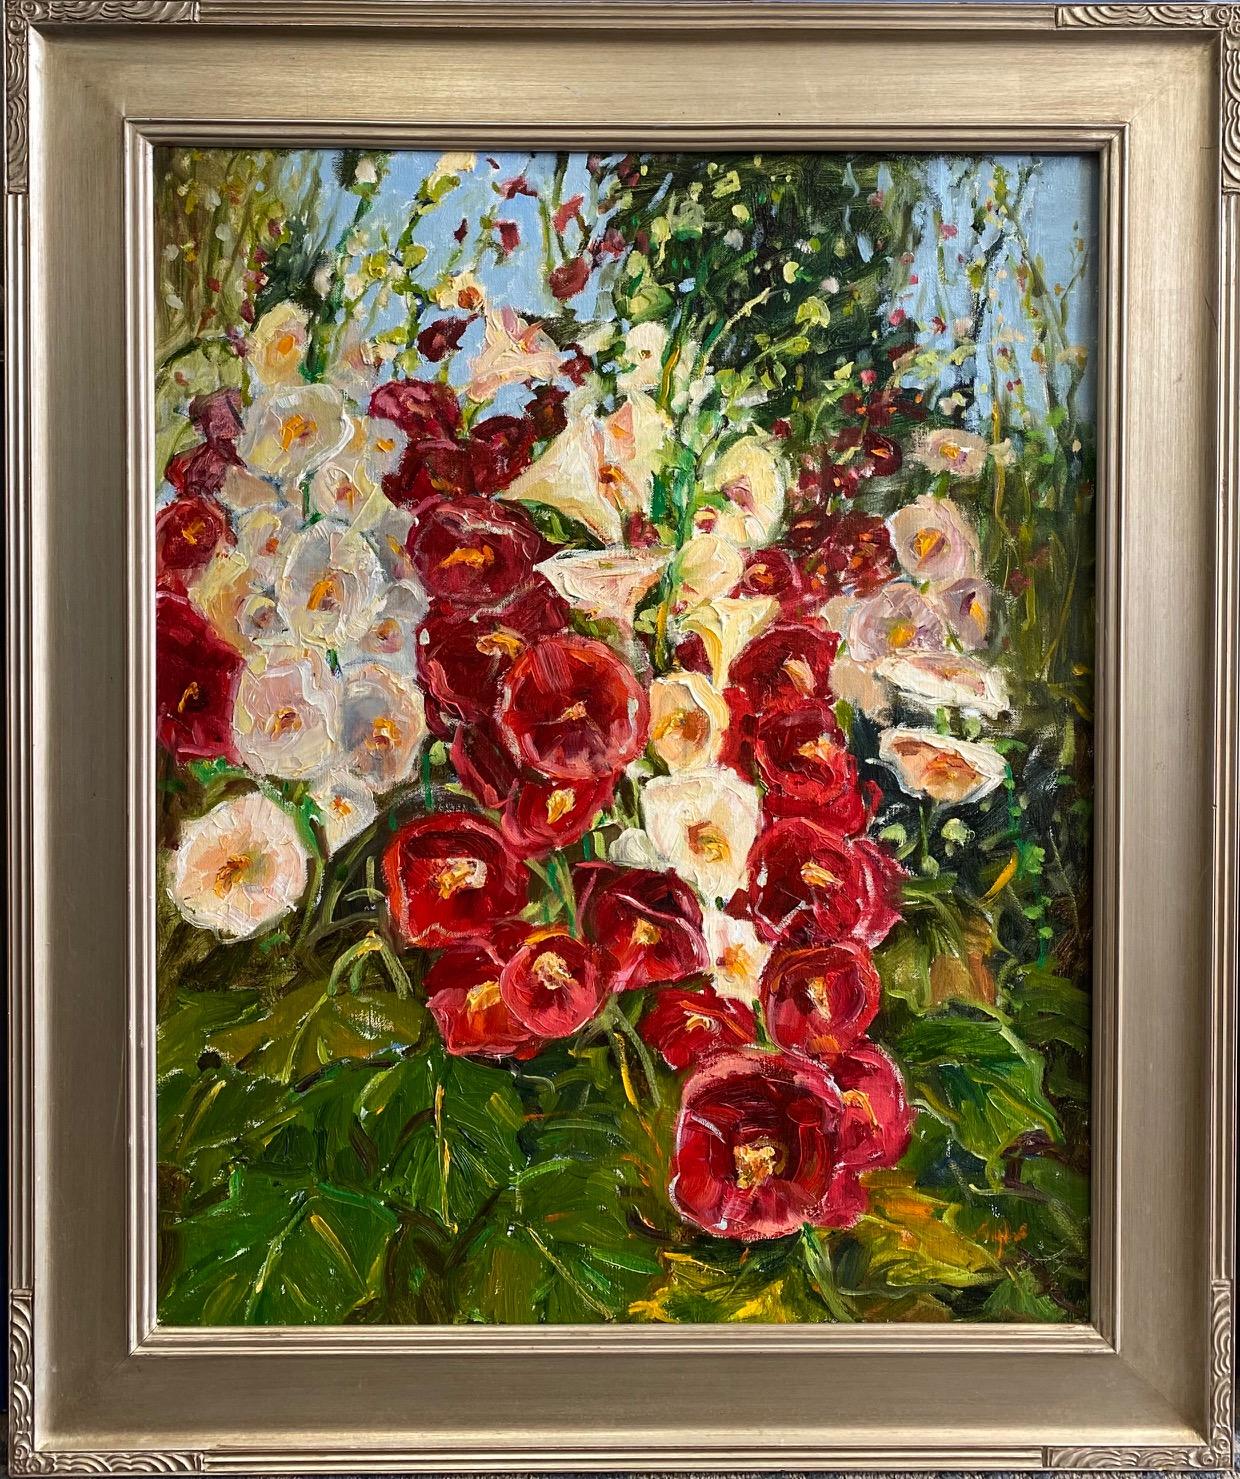 Hollyhocks in Full Bloom, original 30x24 expressionist floral landscape